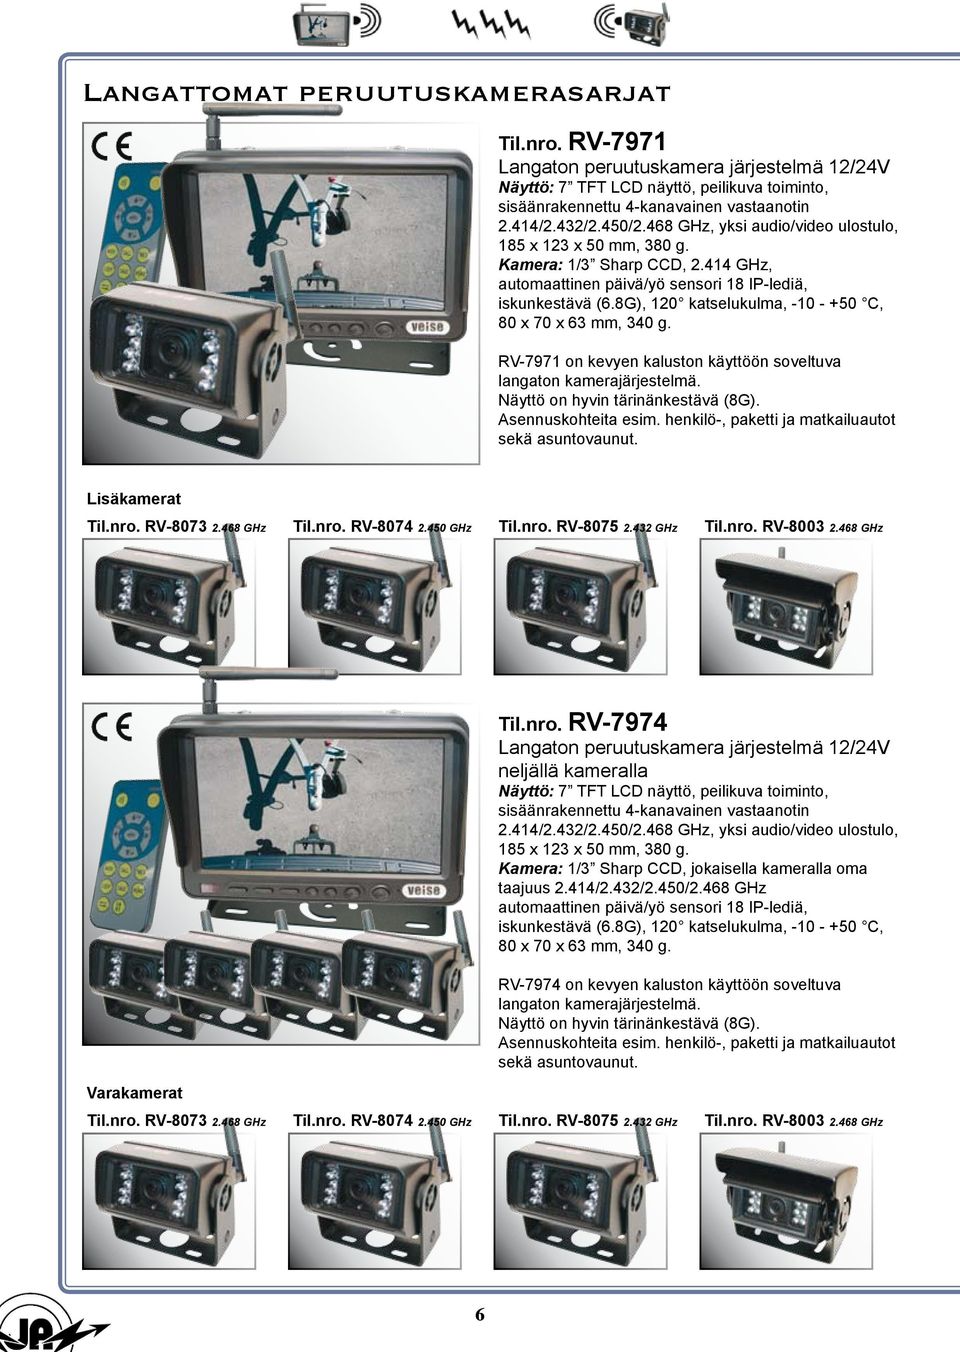 8G), 120 katselukulma, -10 - +50 C, 80 x 70 x 63 mm, 340 g. RV-7971 on kevyen kaluston käyttöön soveltuva langaton kamerajärjestelmä. Näyttö on hyvin tärinänkestävä (8G). Asennuskohteita esim.